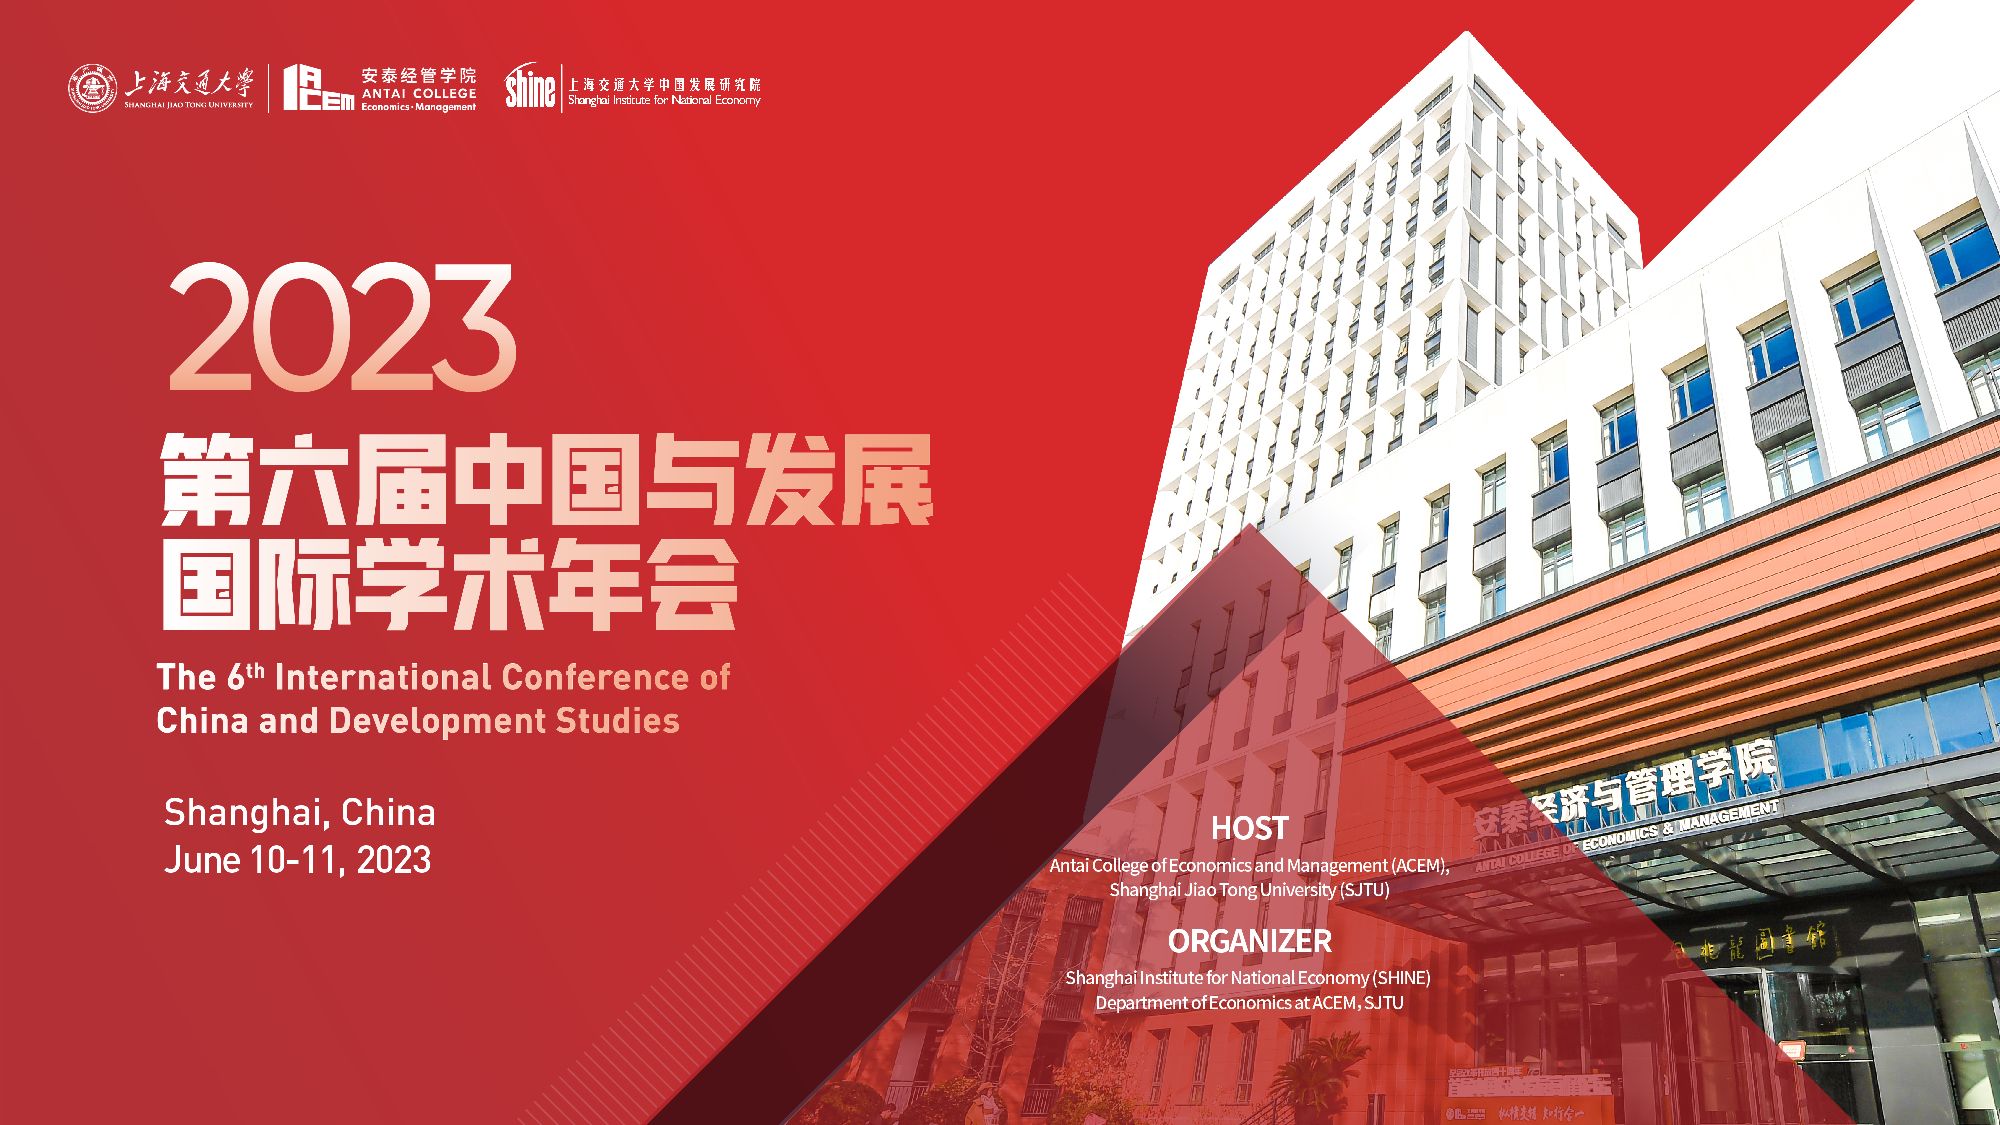 【论坛预告】第六届中国与发展国际学术年会